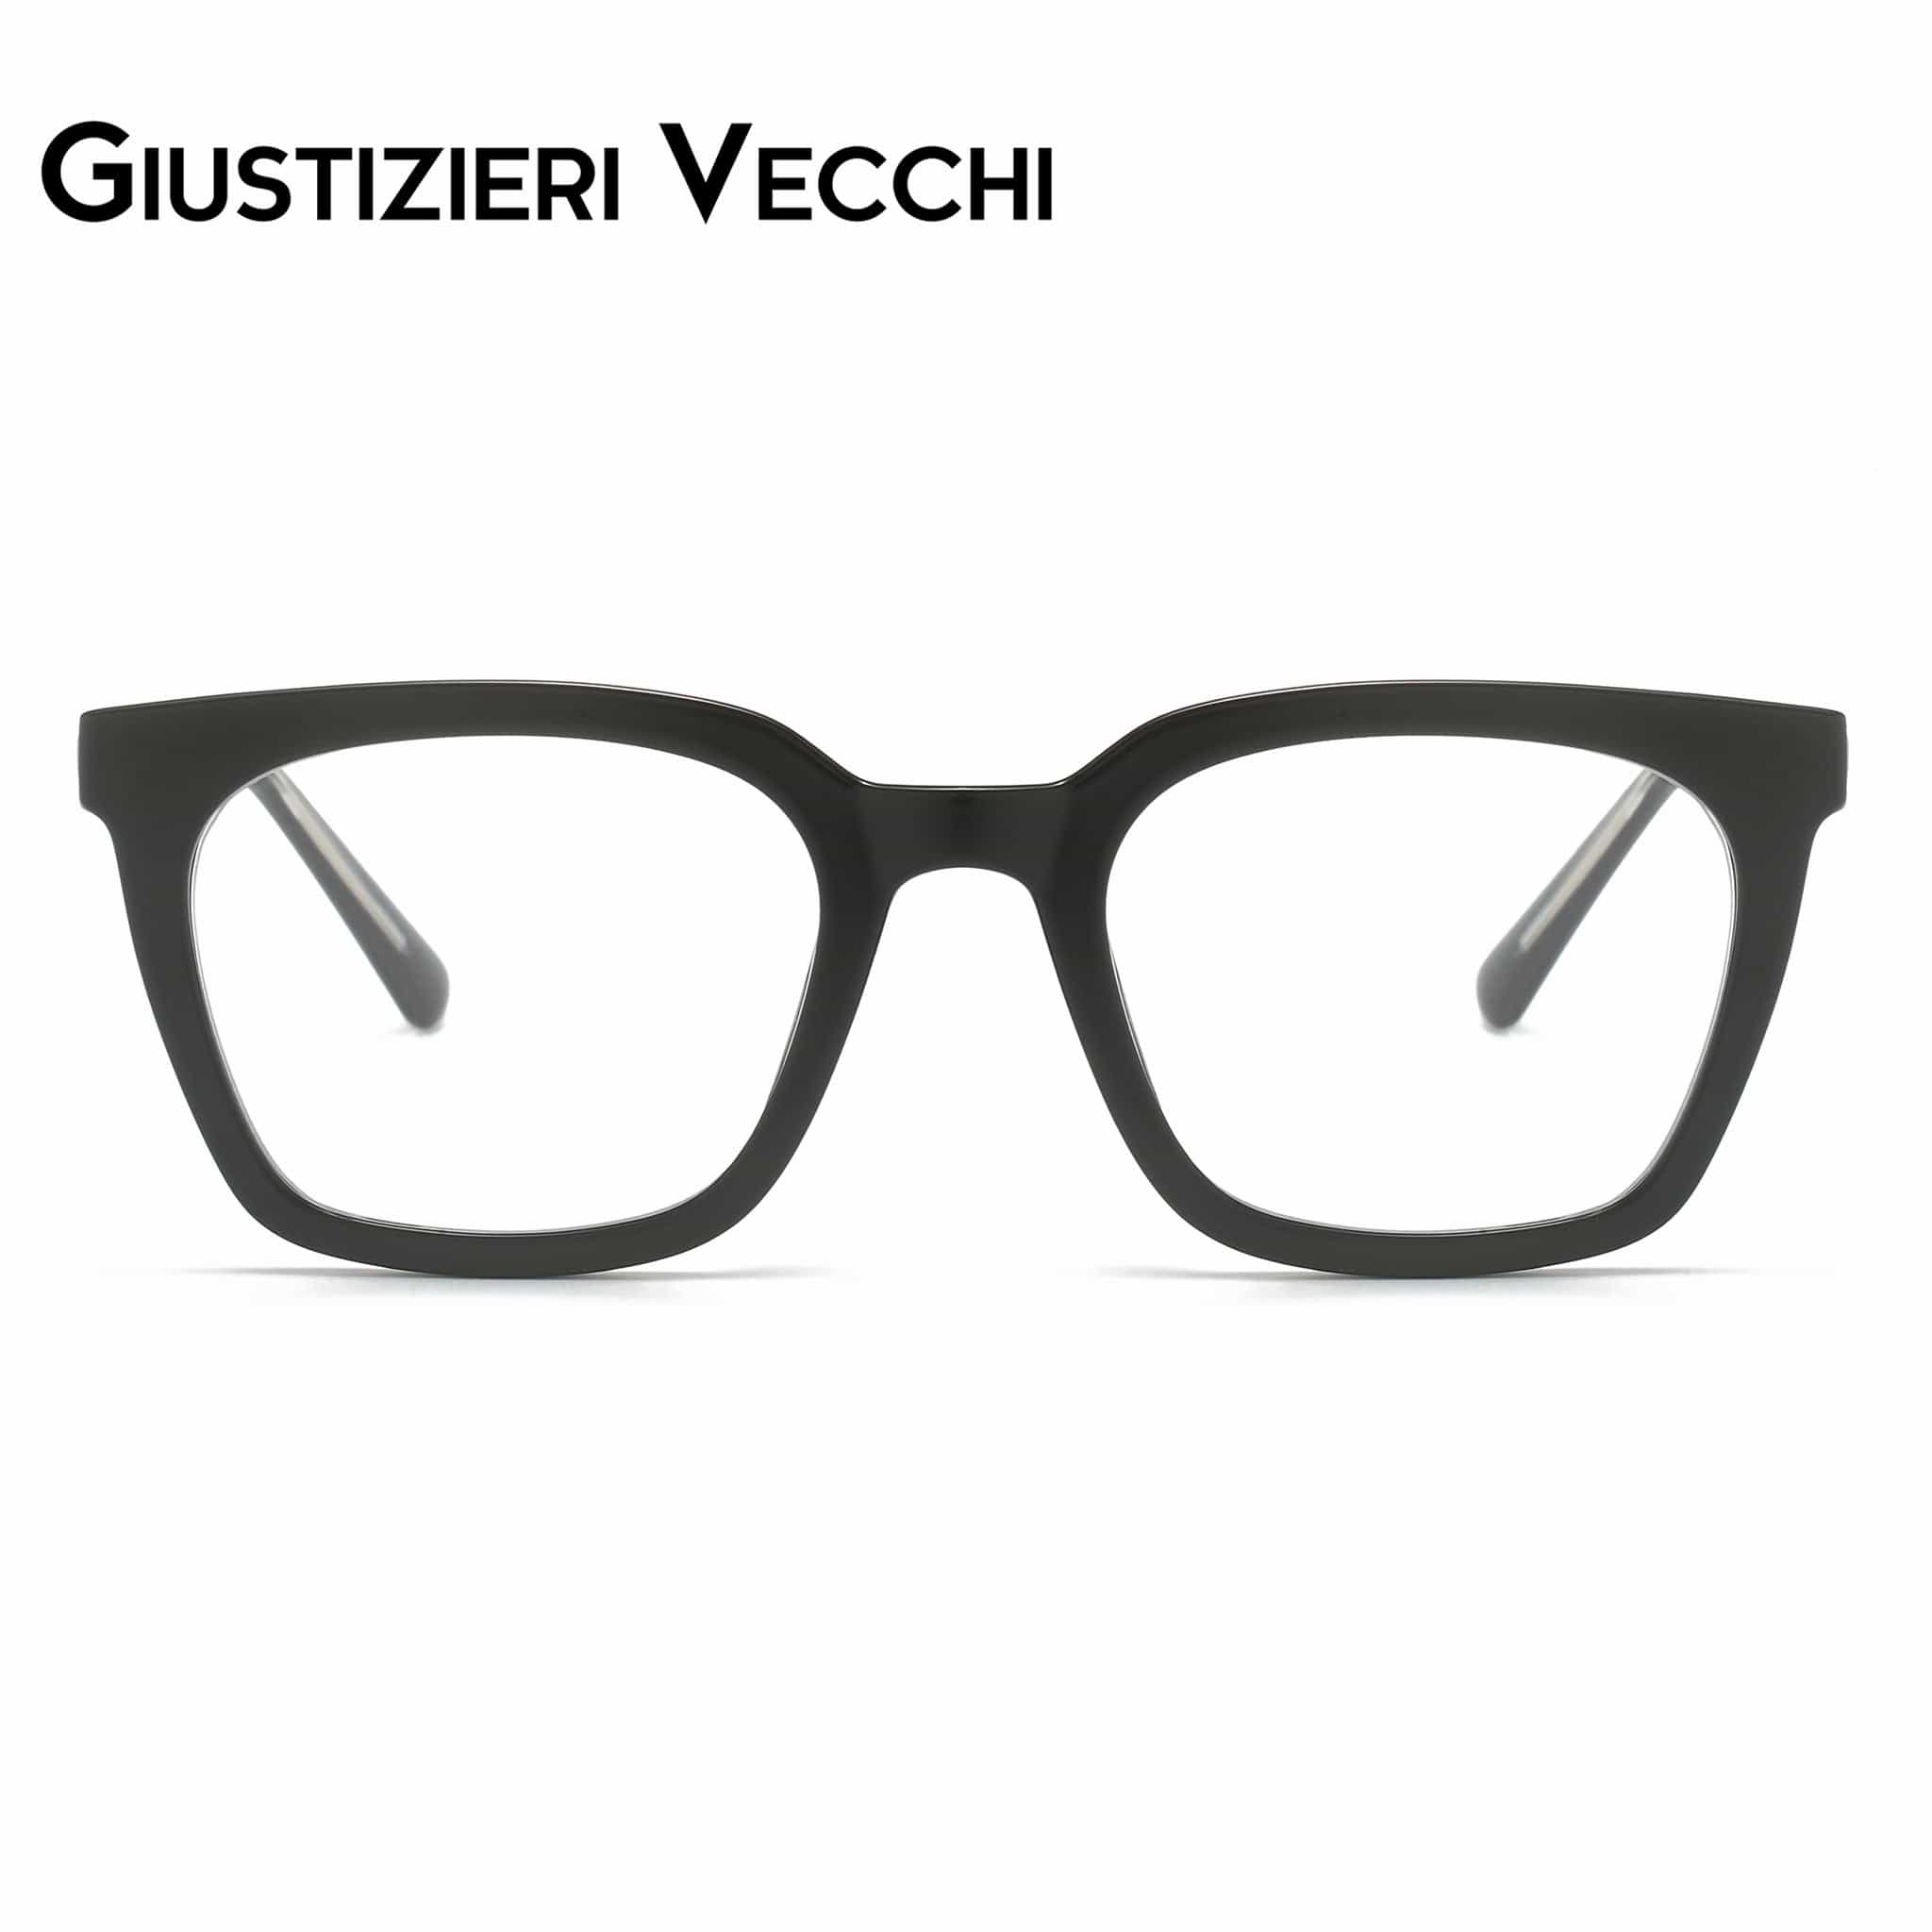 GIUSTIZIERI VECCHI Eyeglasses PhantomPulse Uno